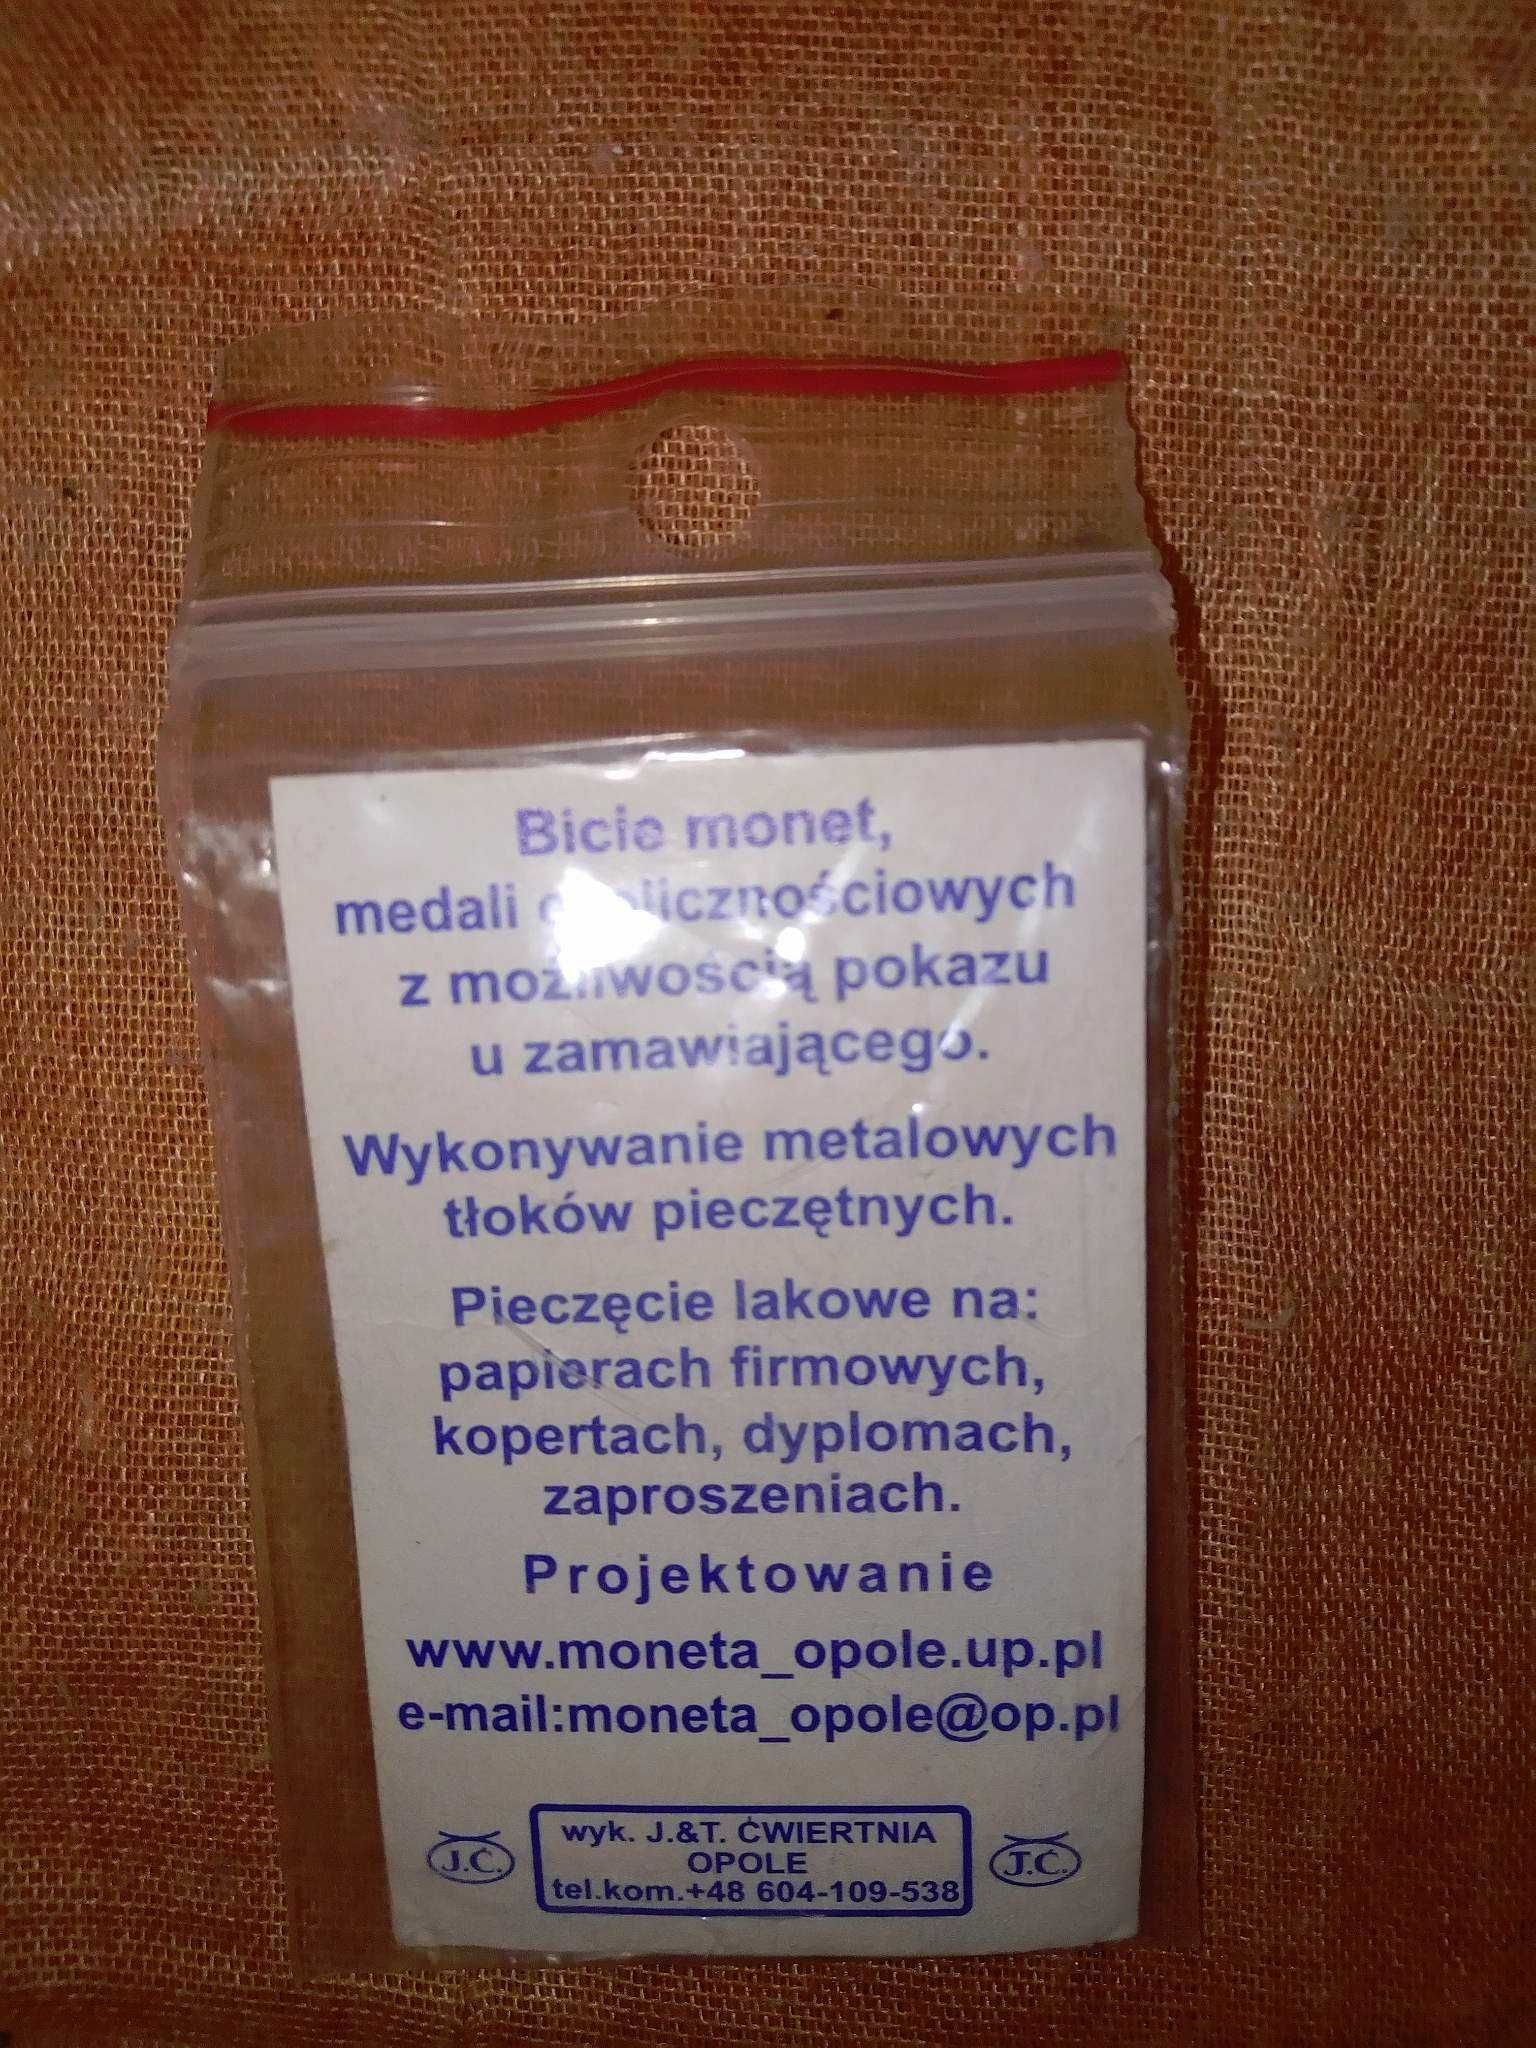 Moneta bita ręcznie Ćwiertnia Opole okolicznościowa kolekcjonerska